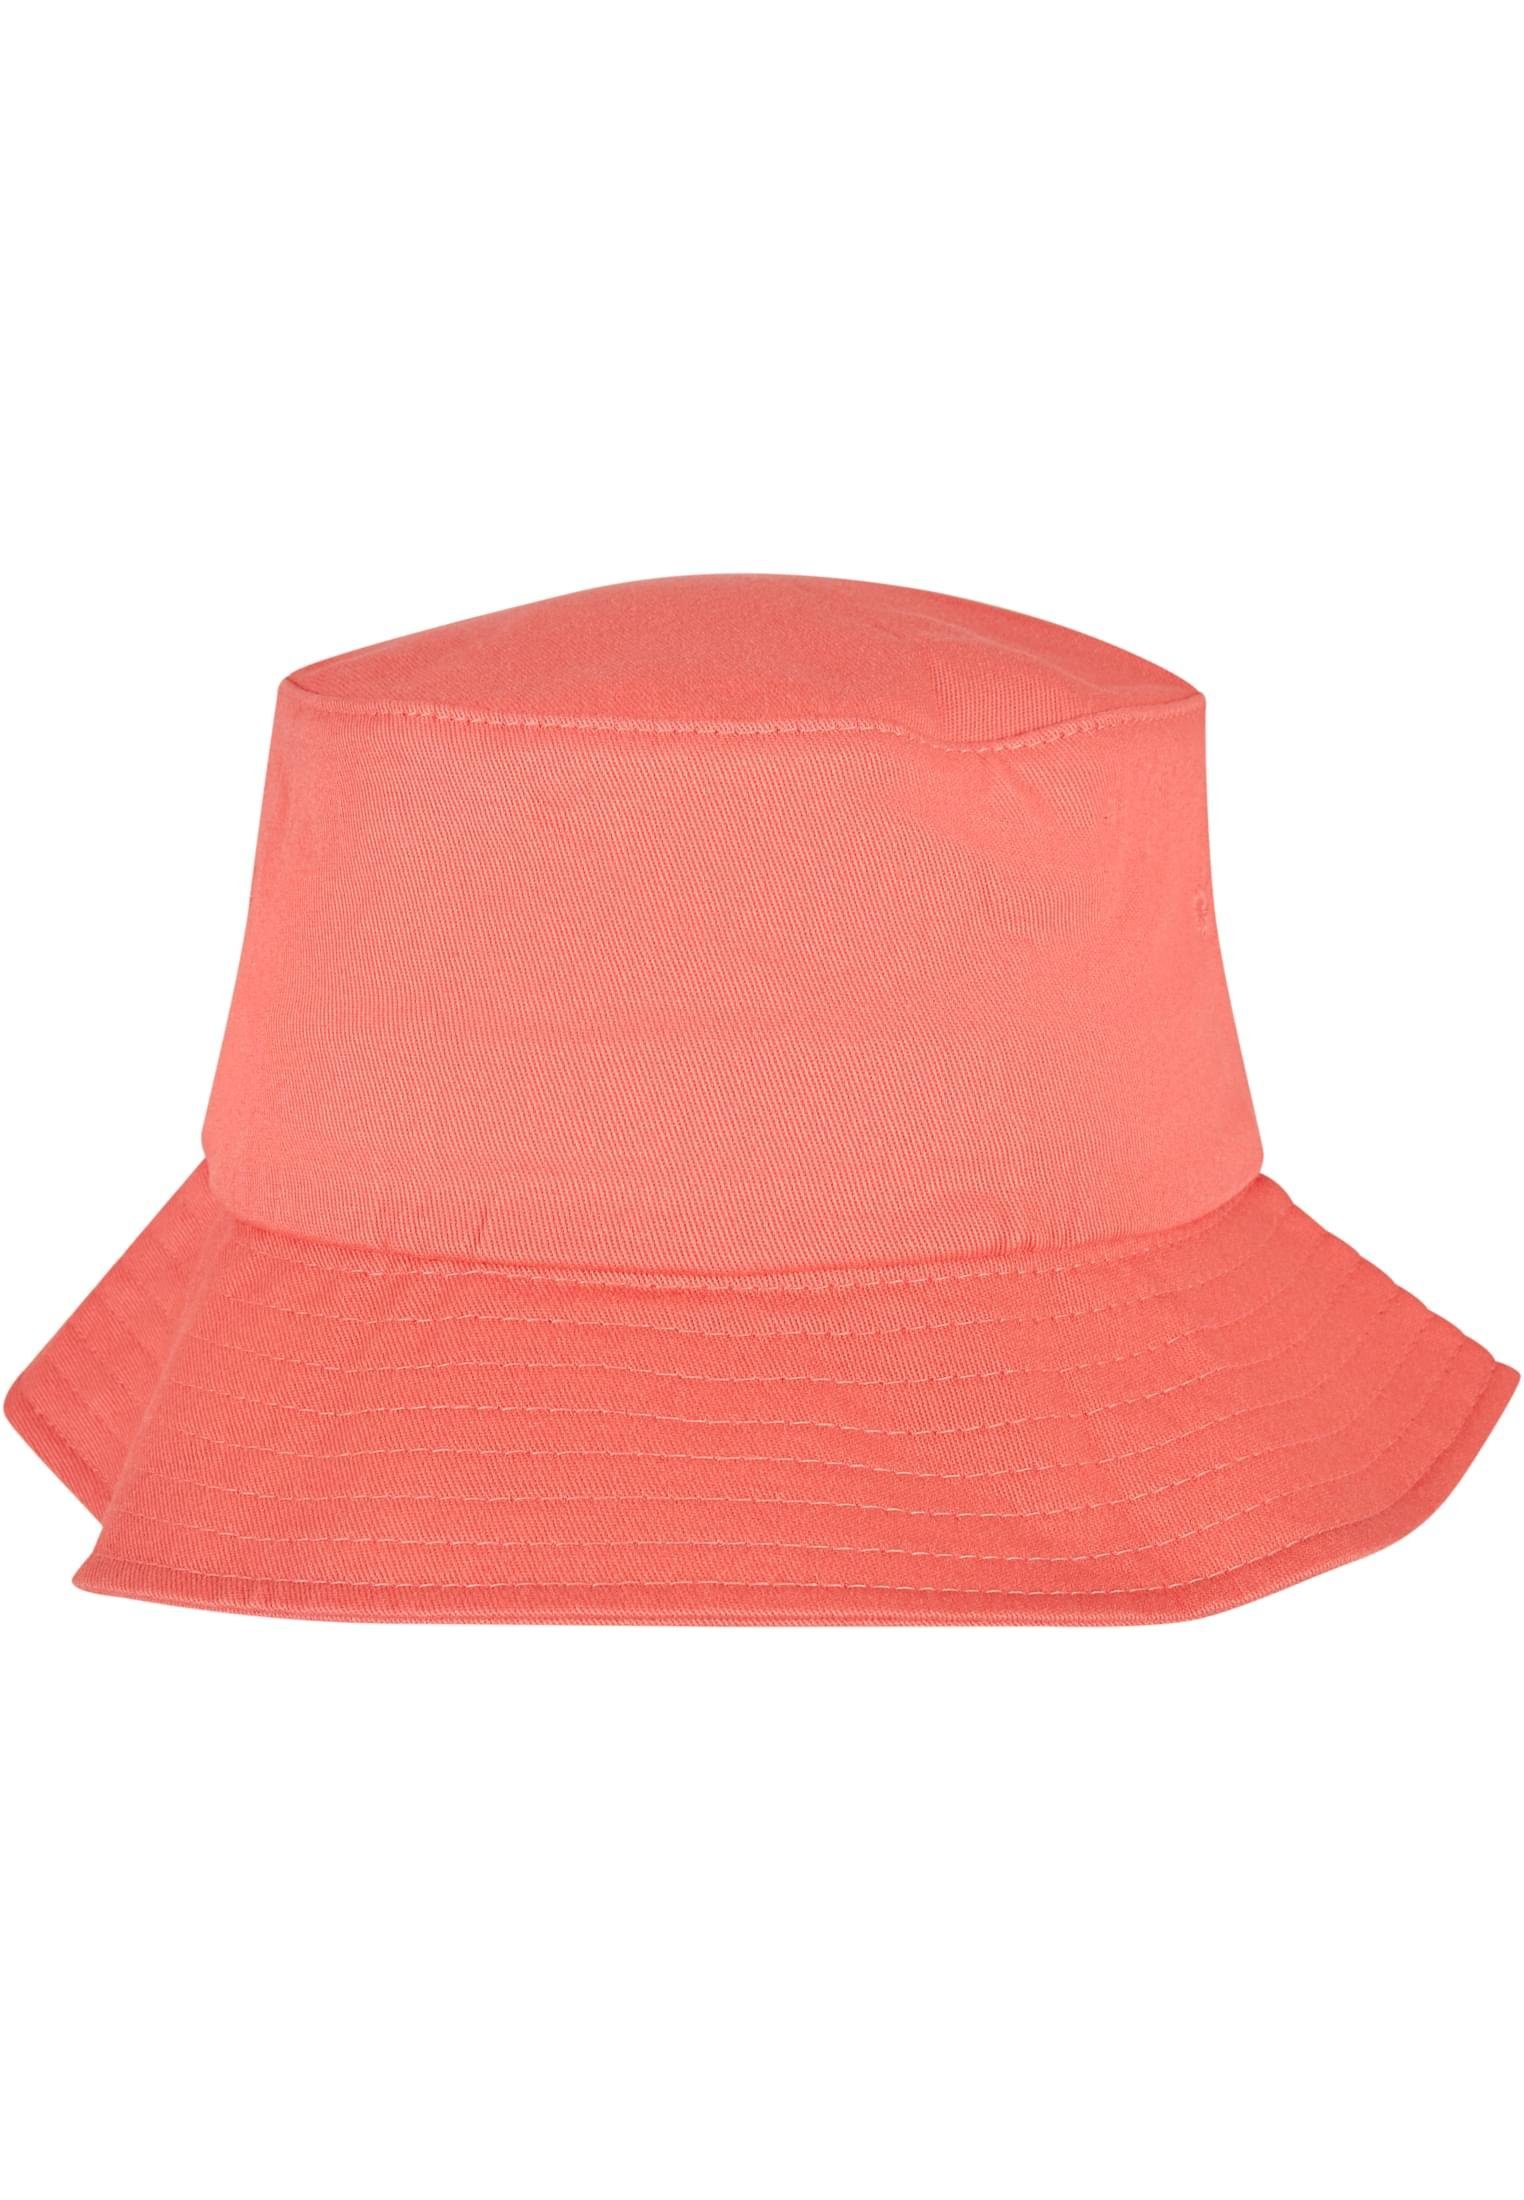 Bucket Twill Flexfit Accessoires Flexfit spicedcoral Hat Cotton Flex Cap